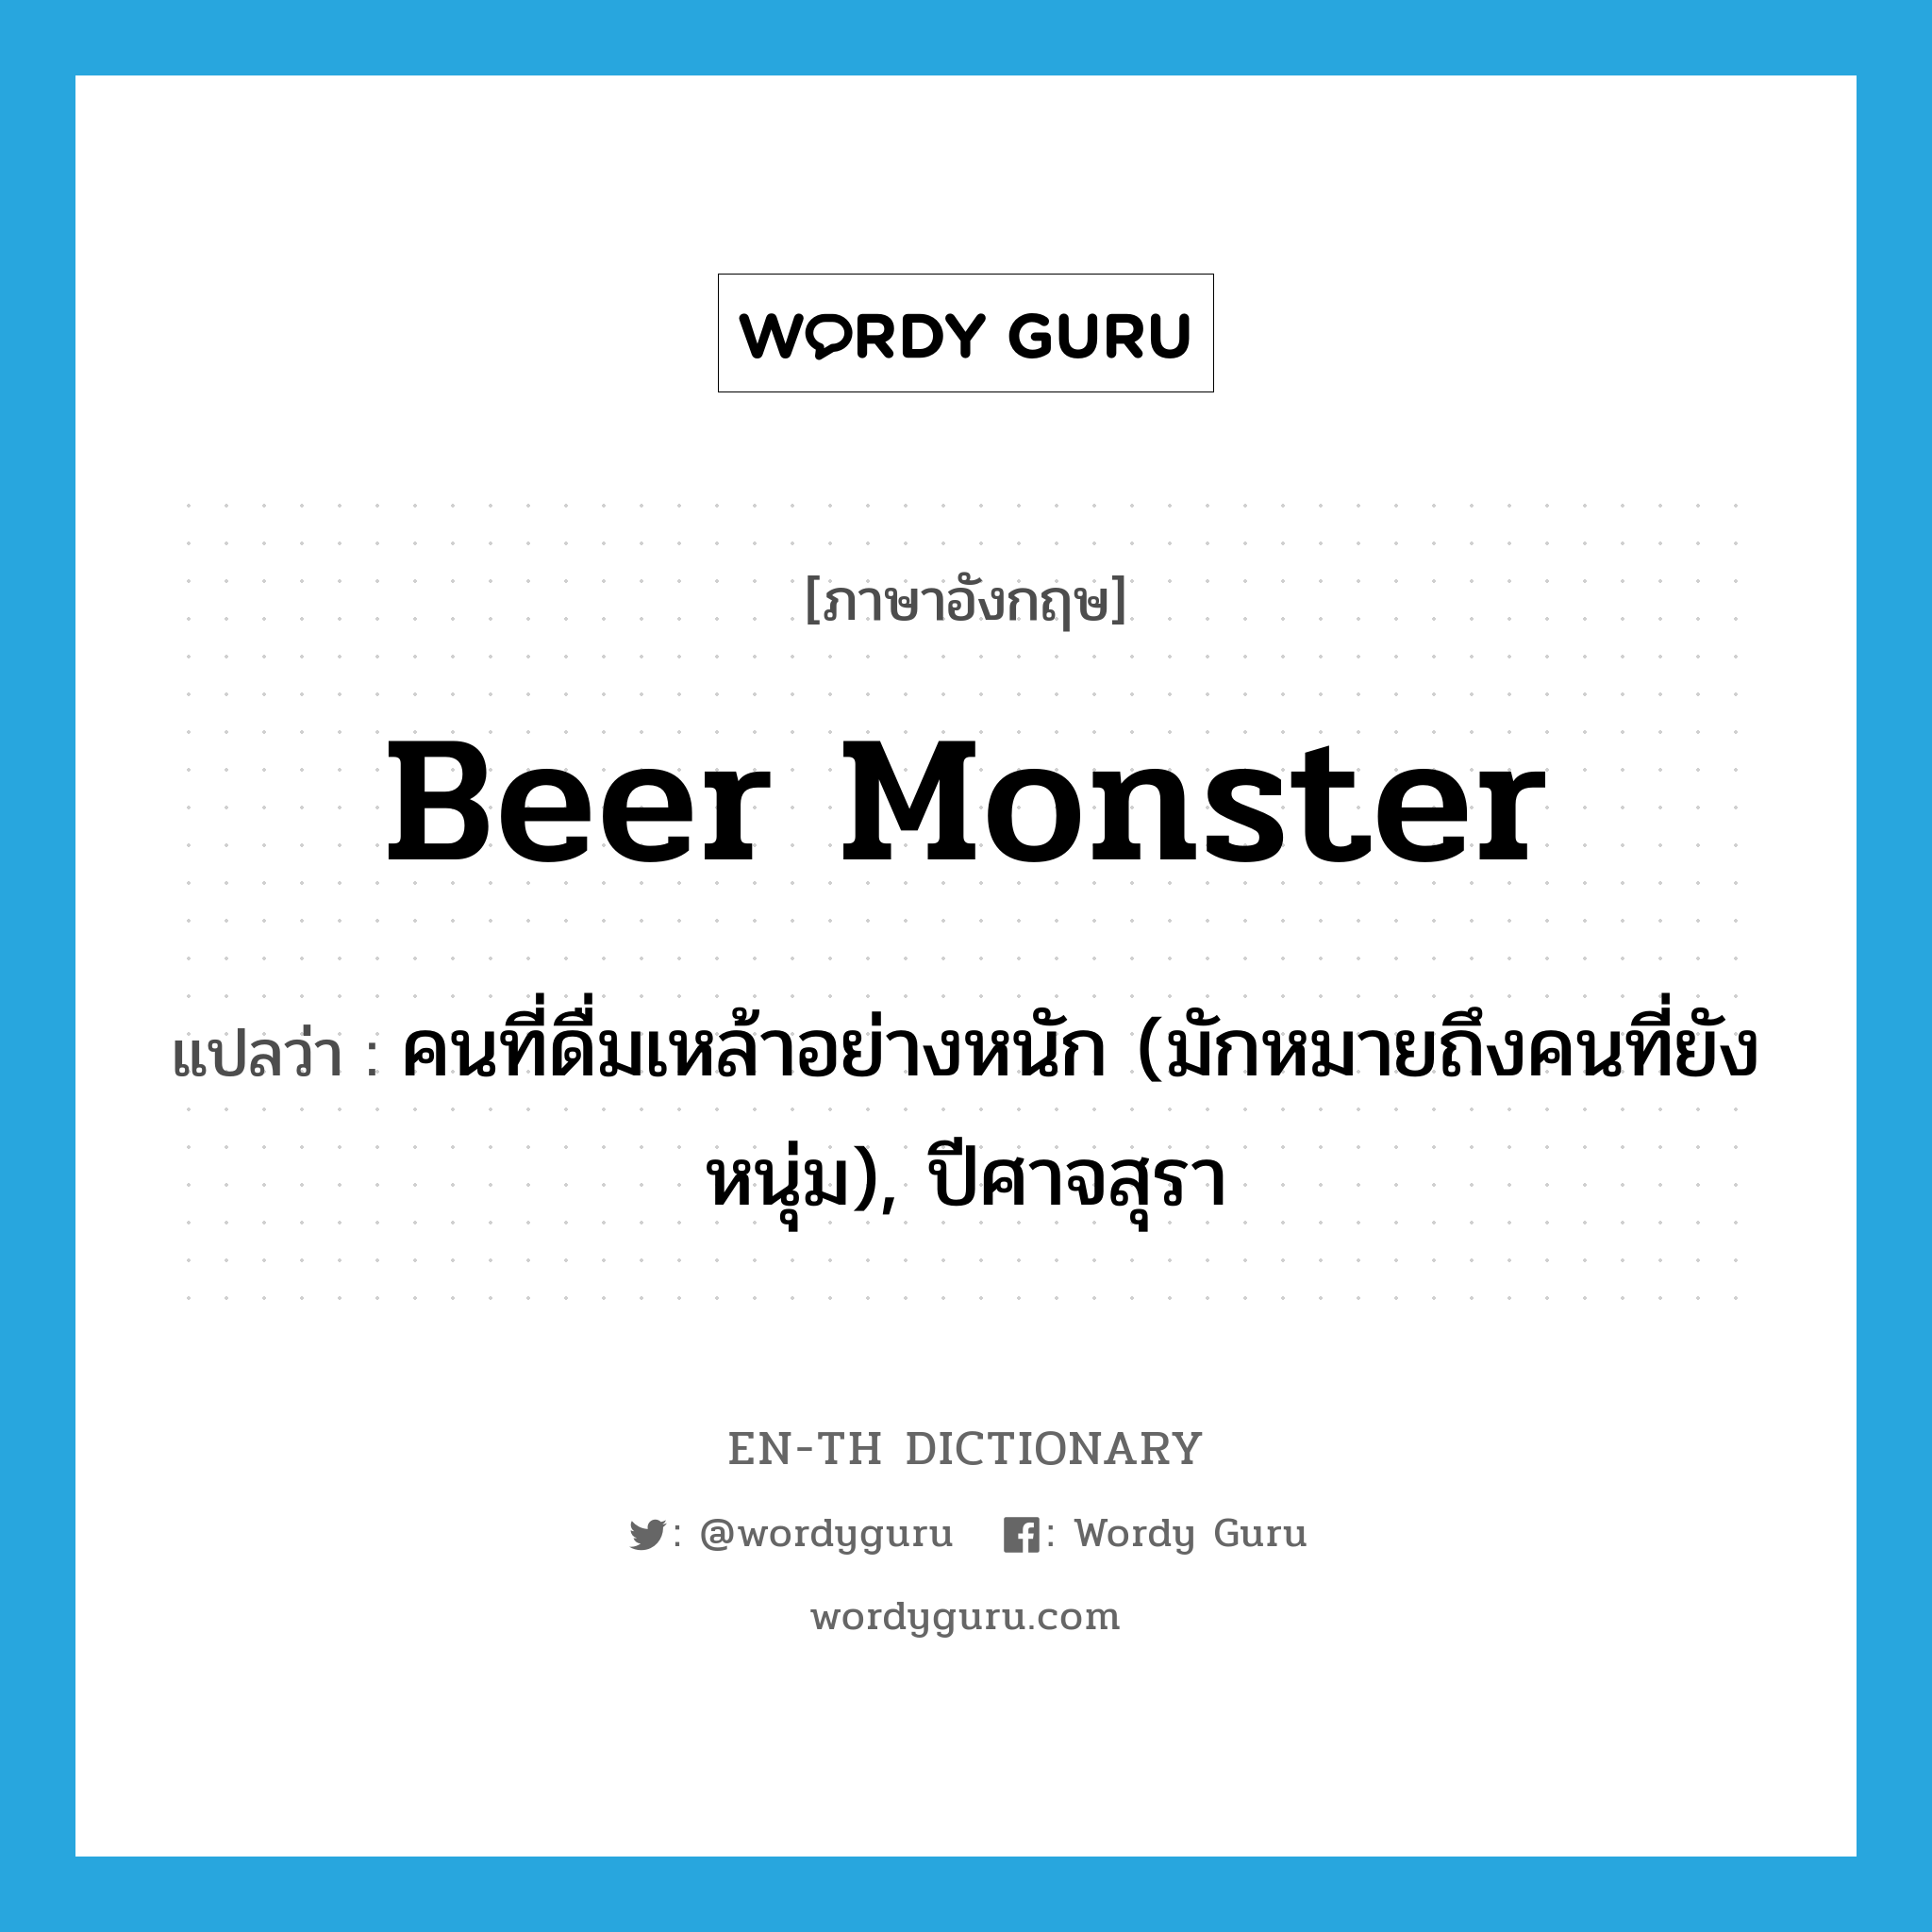 คนที่ดื่มเหล้าอย่างหนัก (มักหมายถึงคนที่ยังหนุ่ม), ปีศาจสุรา ภาษาอังกฤษ?, คำศัพท์ภาษาอังกฤษ คนที่ดื่มเหล้าอย่างหนัก (มักหมายถึงคนที่ยังหนุ่ม), ปีศาจสุรา แปลว่า beer monster ประเภท SL หมวด SL